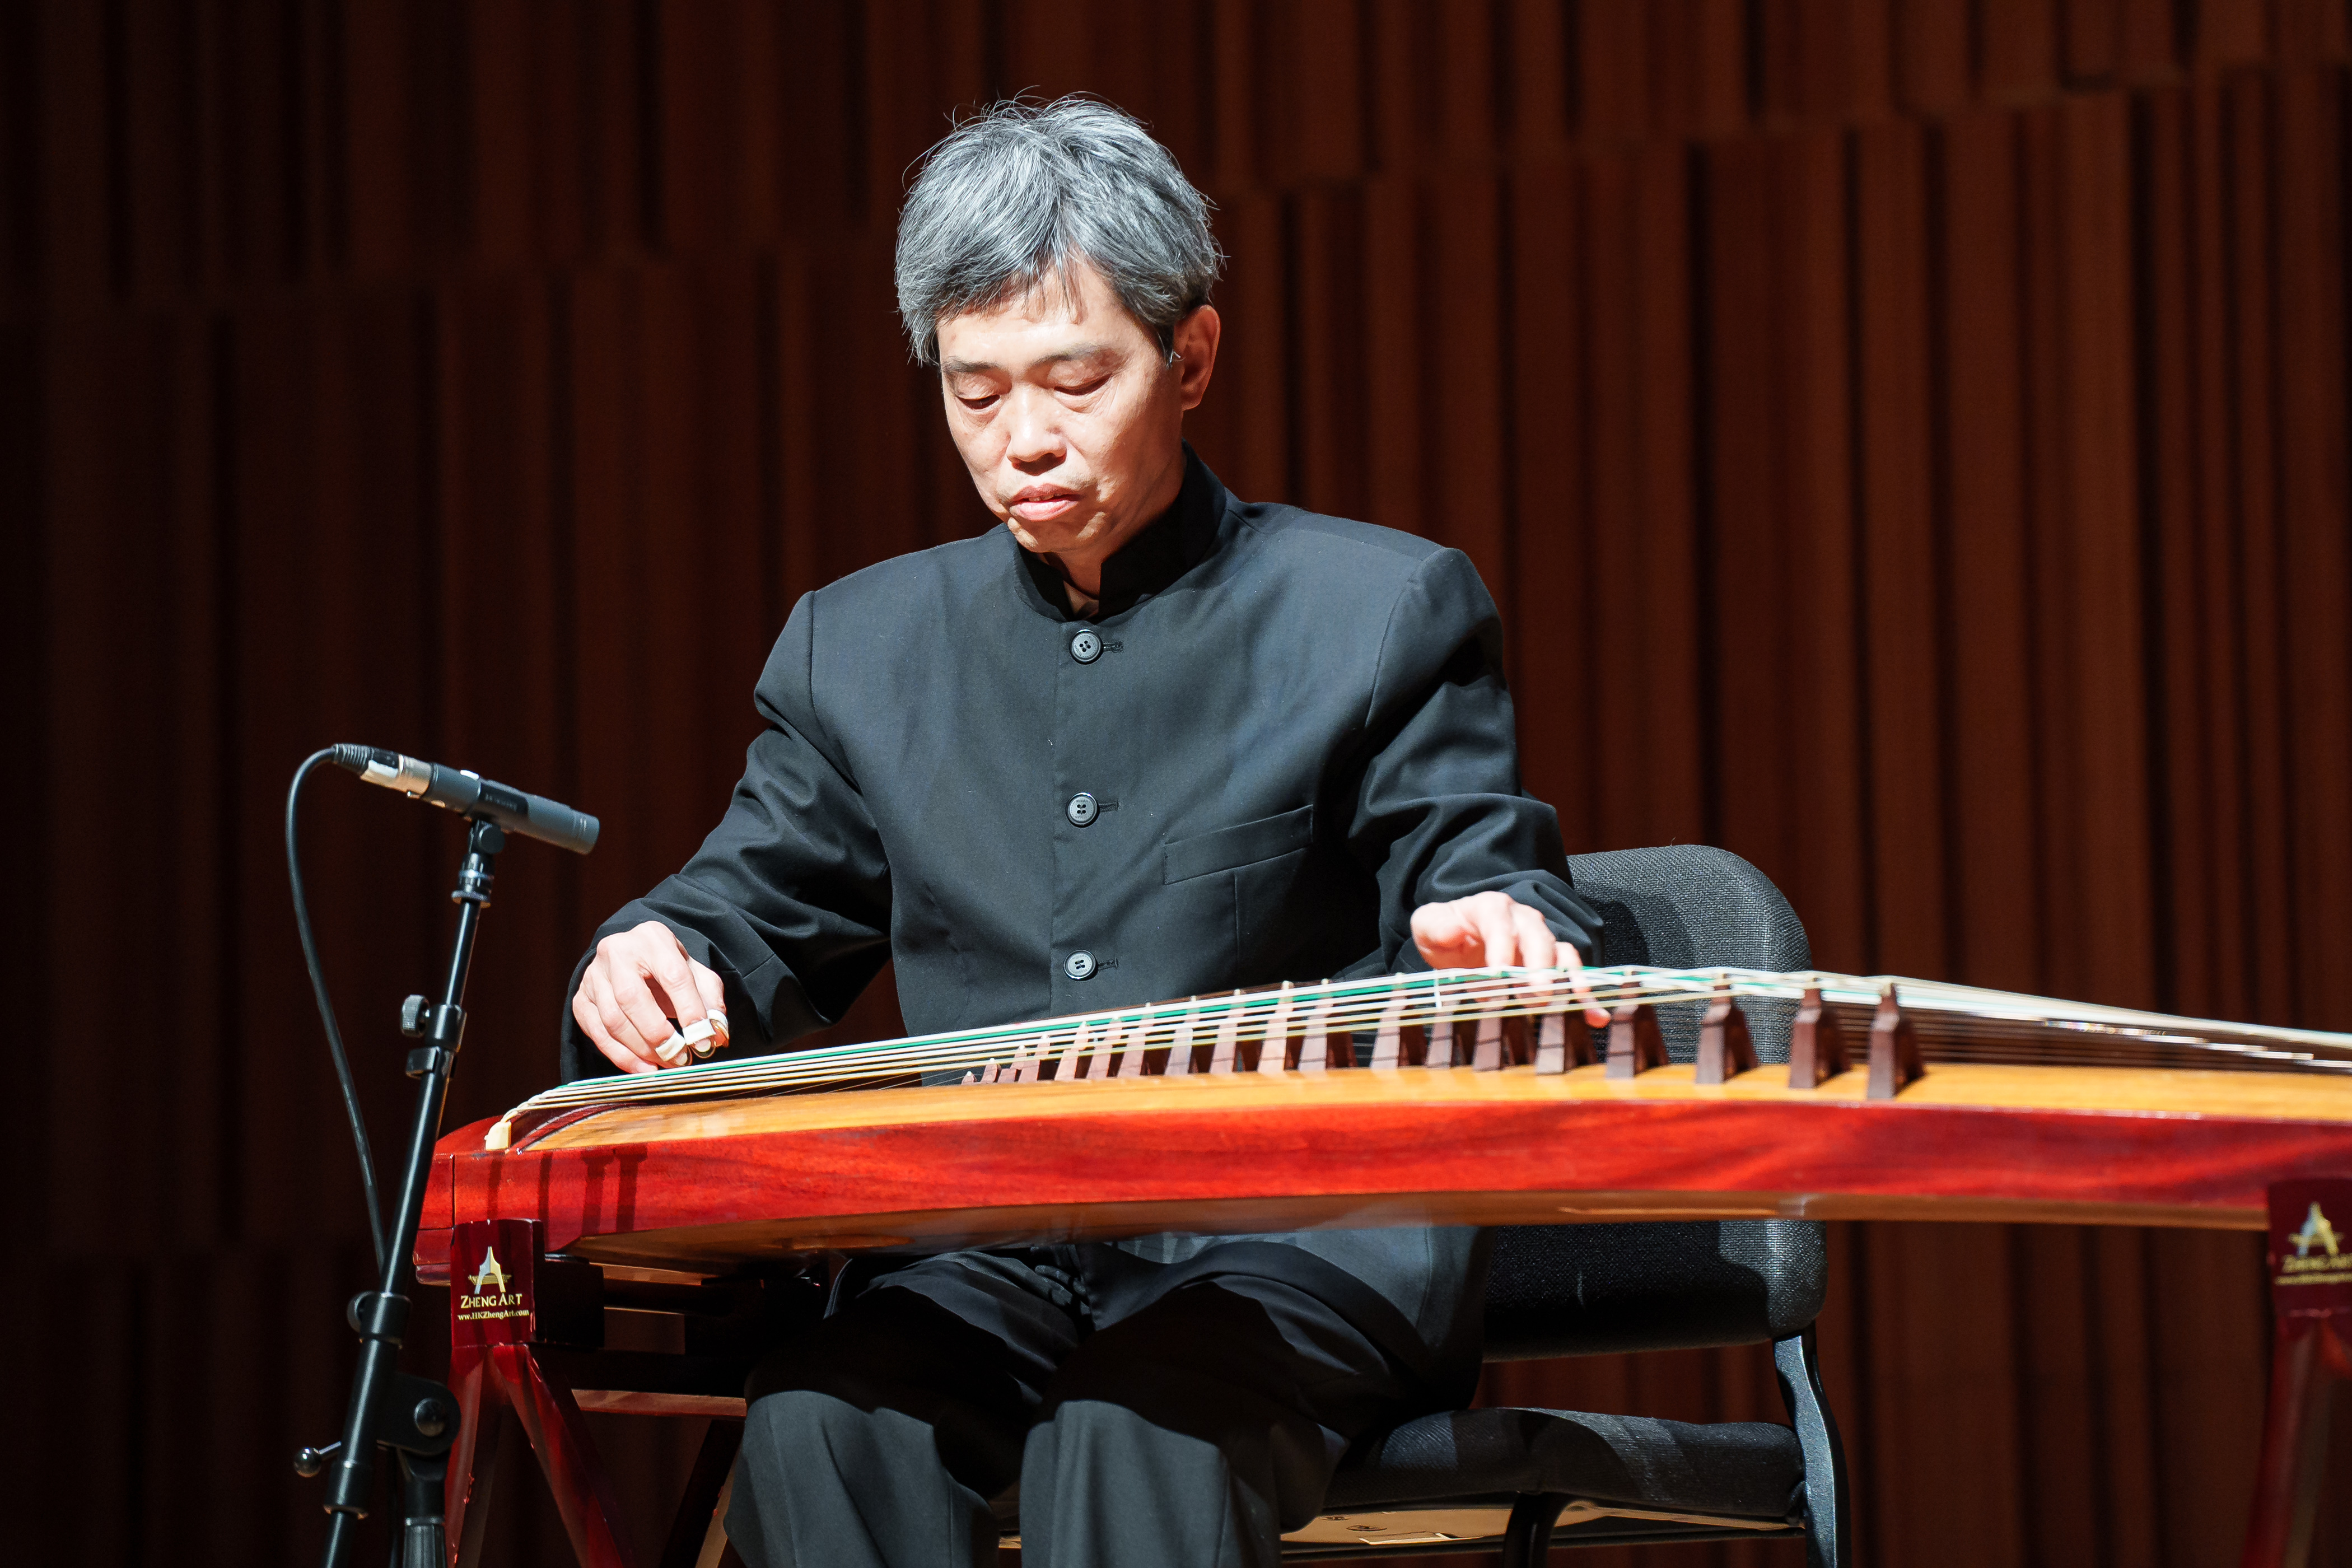 逸響潮樂演奏組 : 弦詩之夜 Yi Xiang Chaozhou Music Ensemble: String Poems